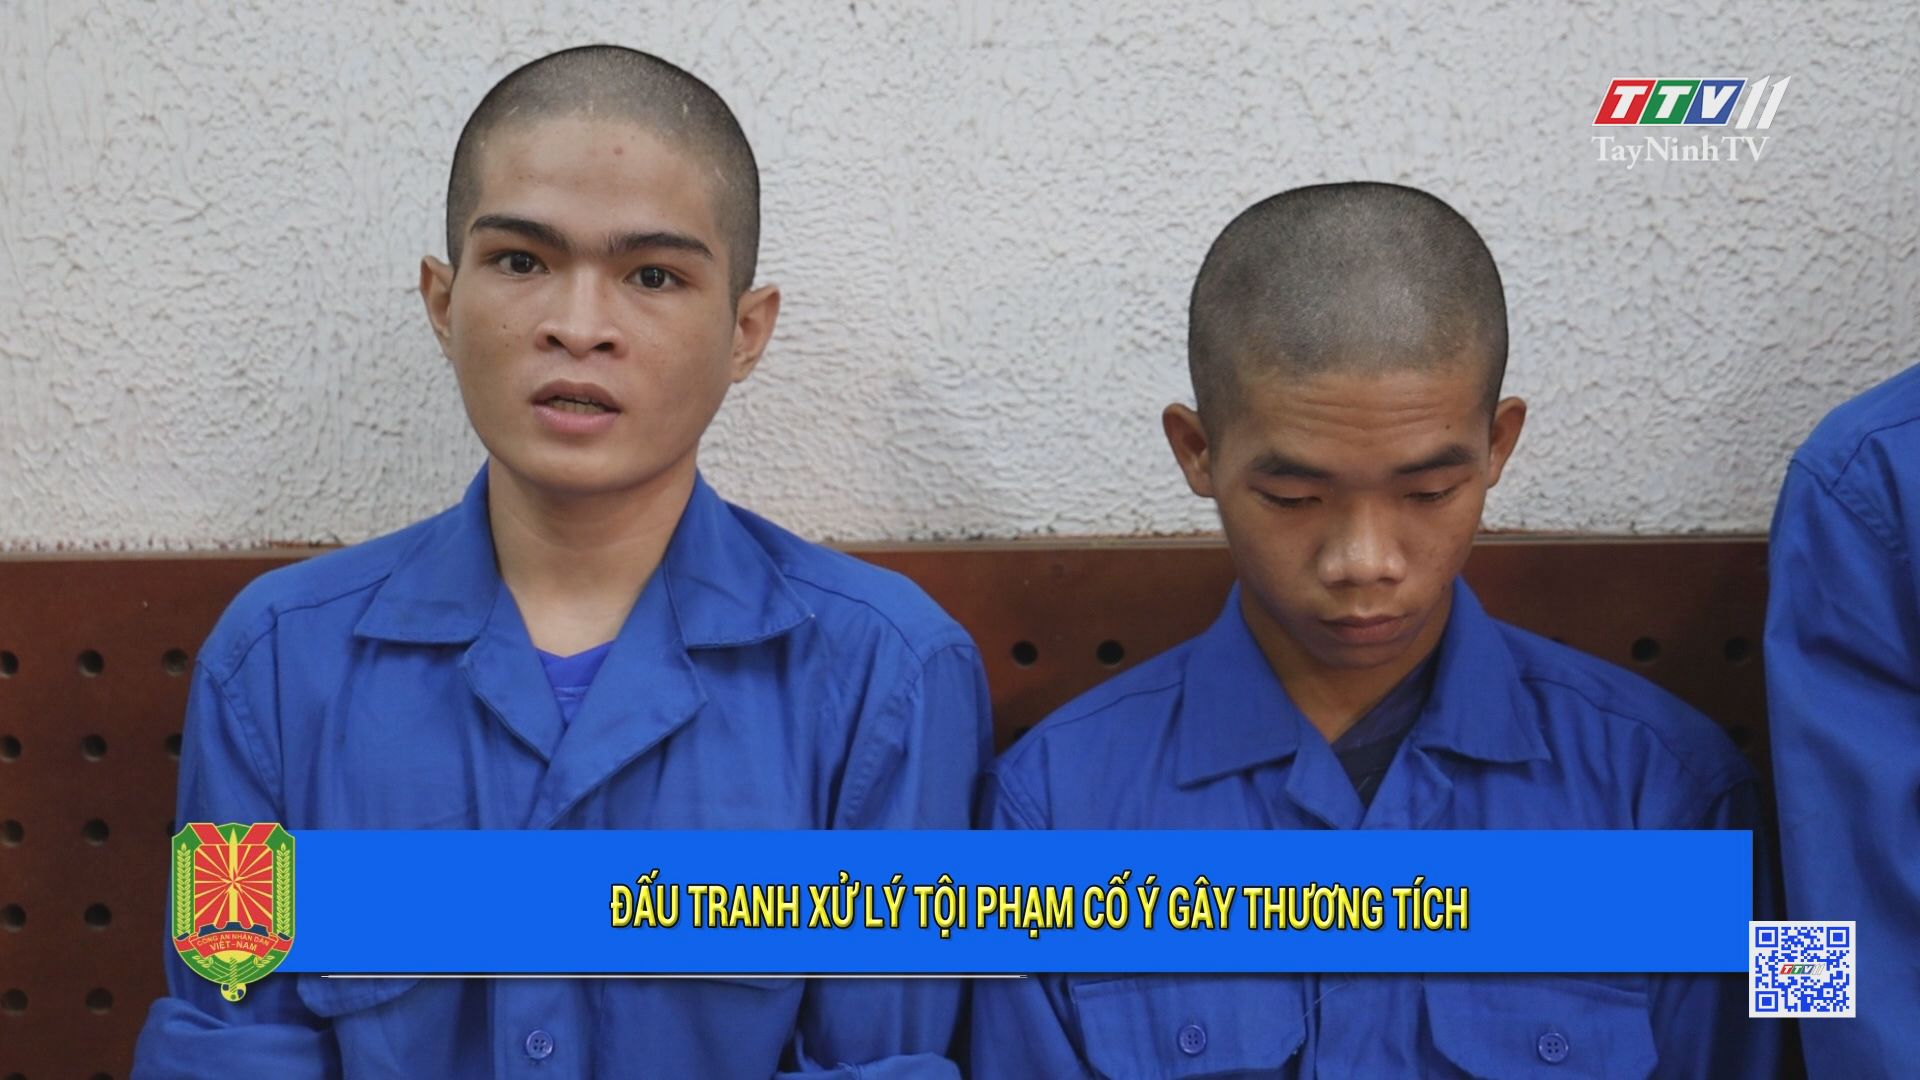 Đấu tranh xử lý tội phạm cố ý gây thương tích | An ninh Tây Ninh | TayNinhTV